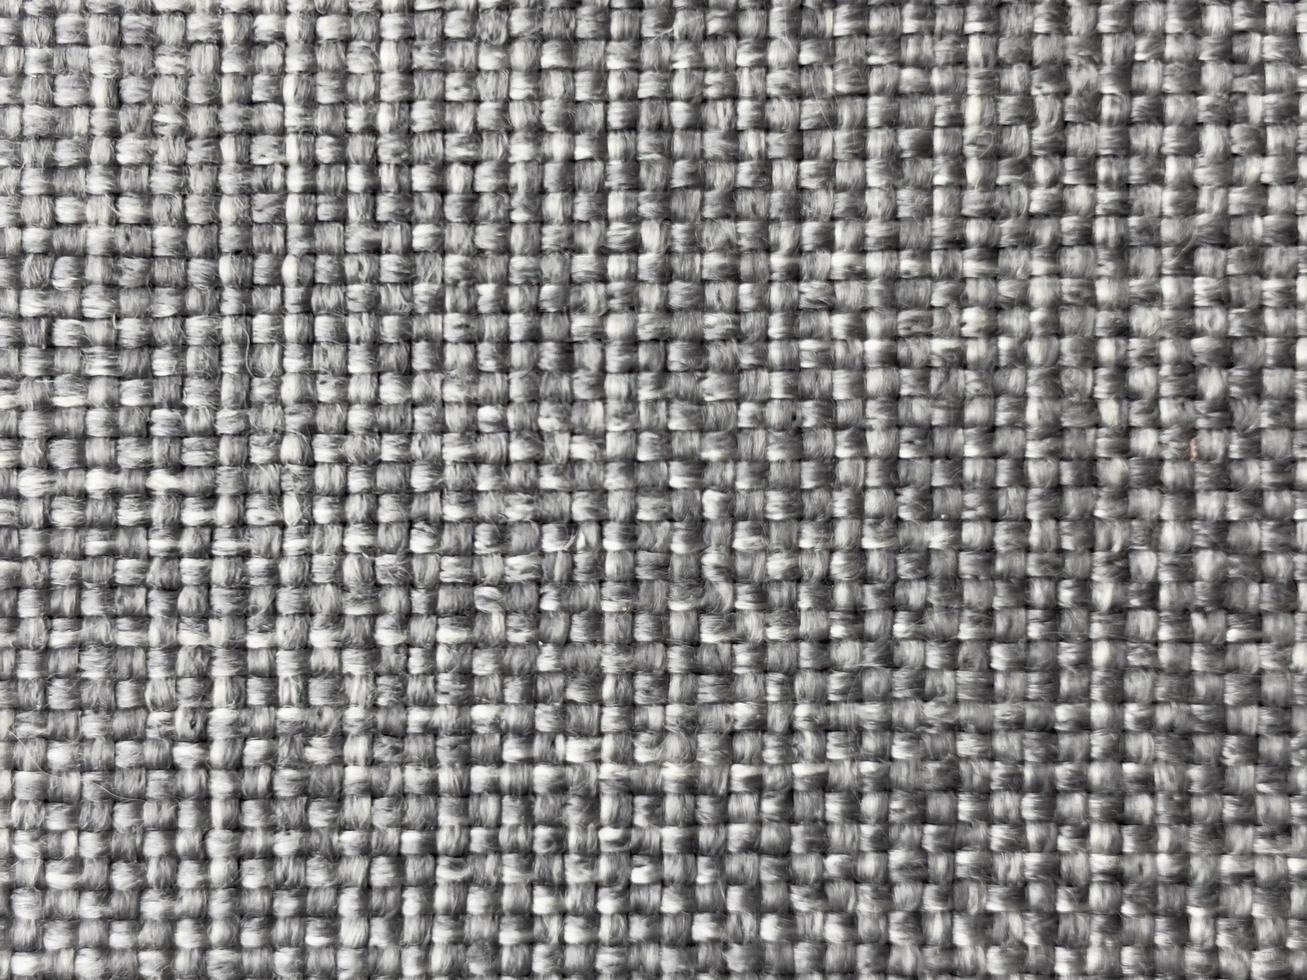 texture de couleur gris lin naturel comme arrière-plan photo